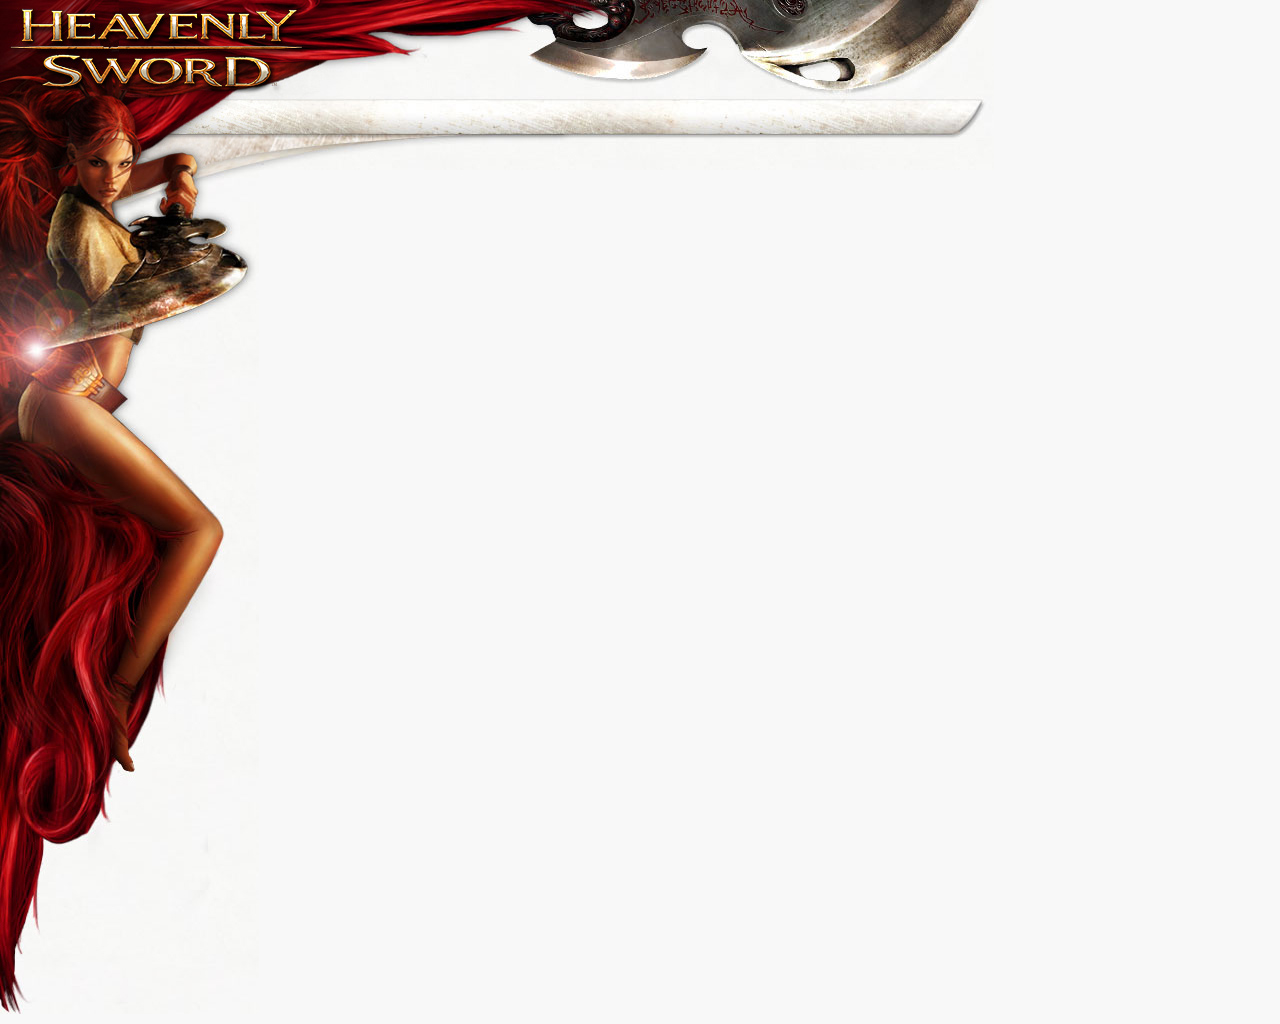 Laden Sie Heavenly Sword HD-Desktop-Hintergründe herunter